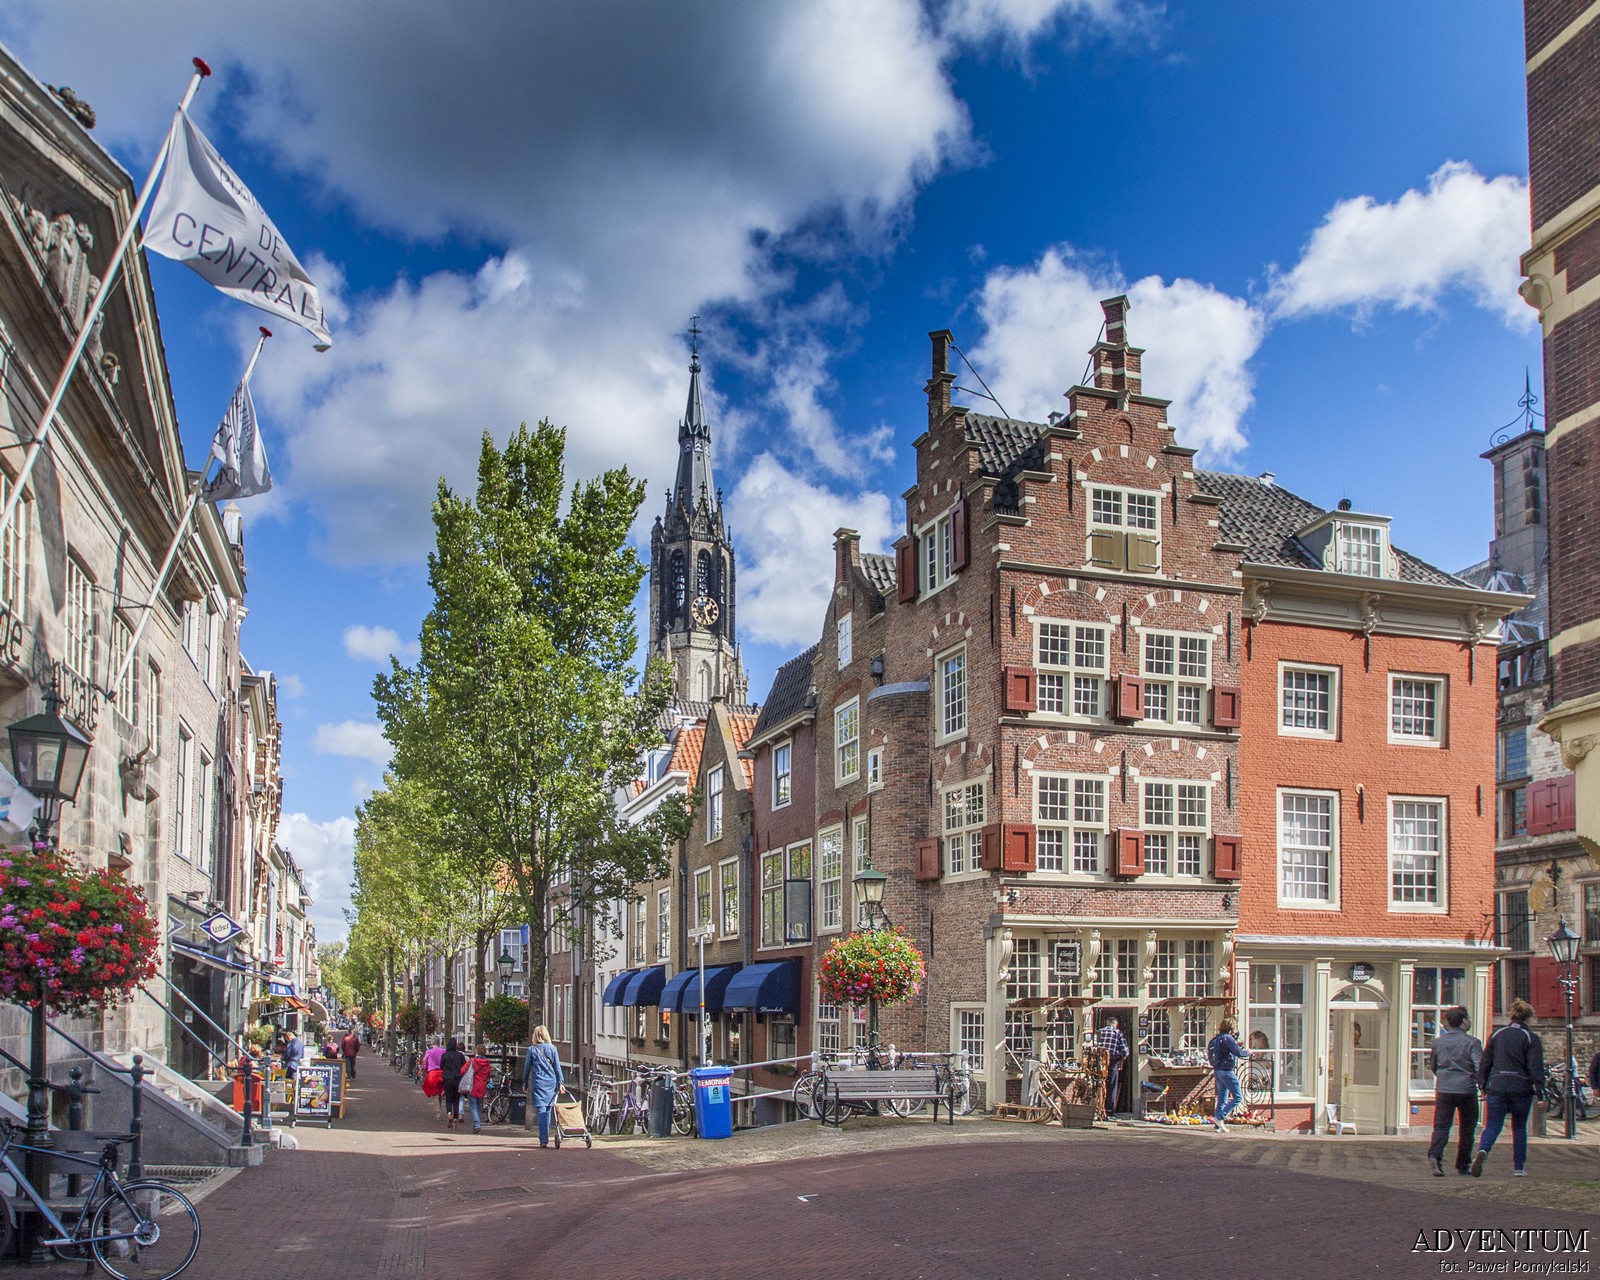 Holandia Delft Atrakcje Zwiedzanie co Zobaczyć Amsterdam Rotterdam Haga Kanały Wiatraki